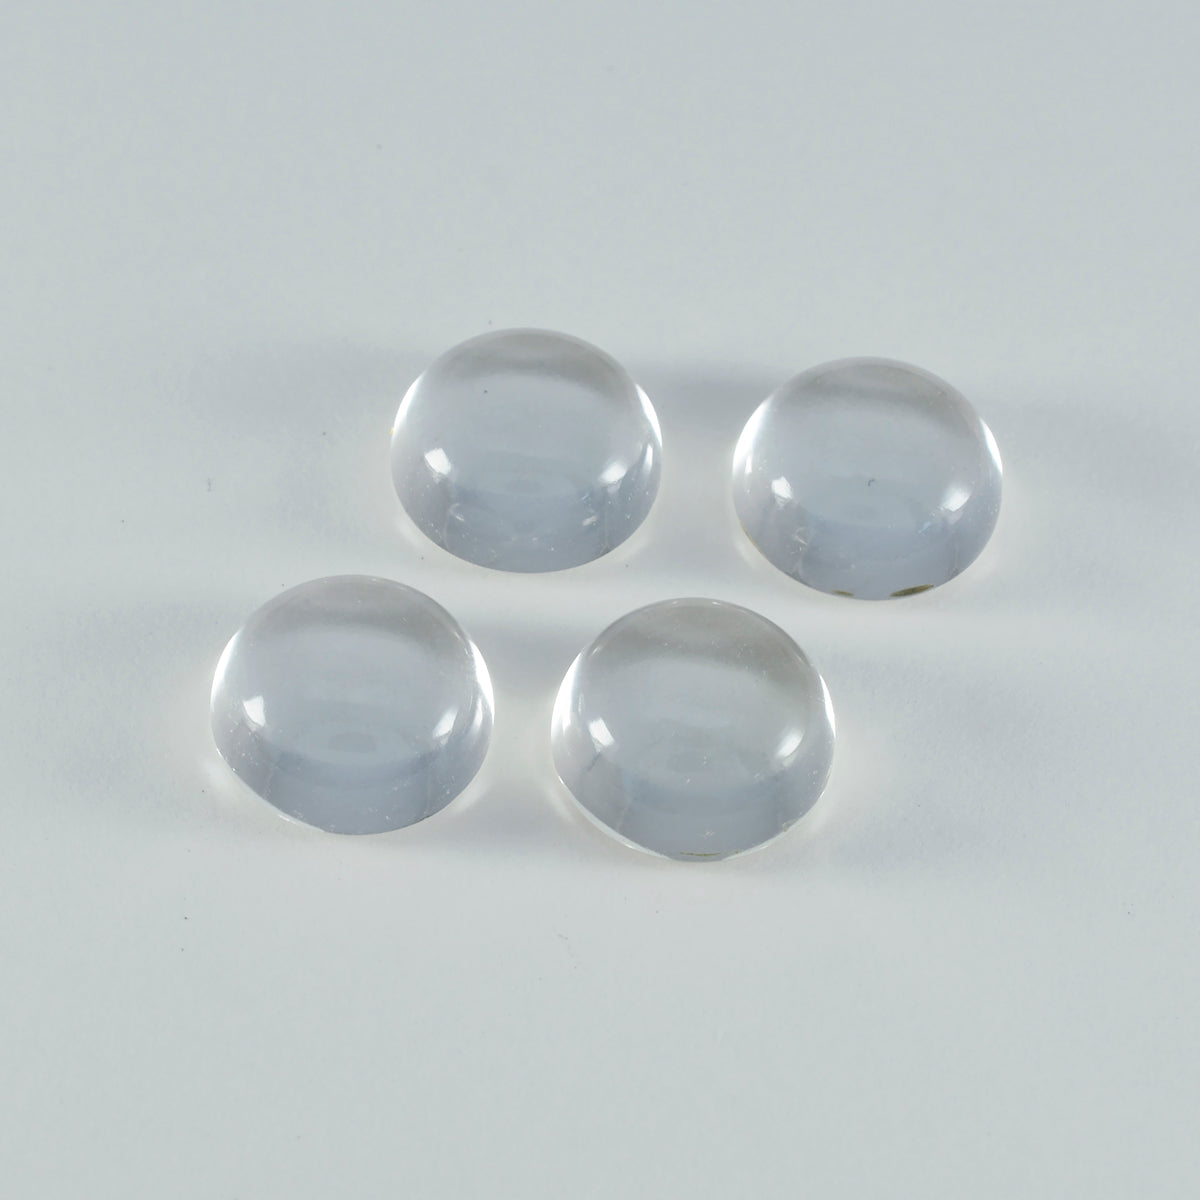 Riyogems – cabochon de quartz en cristal blanc, forme ronde, pierre de bonne qualité, 9x9mm, 1 pièce